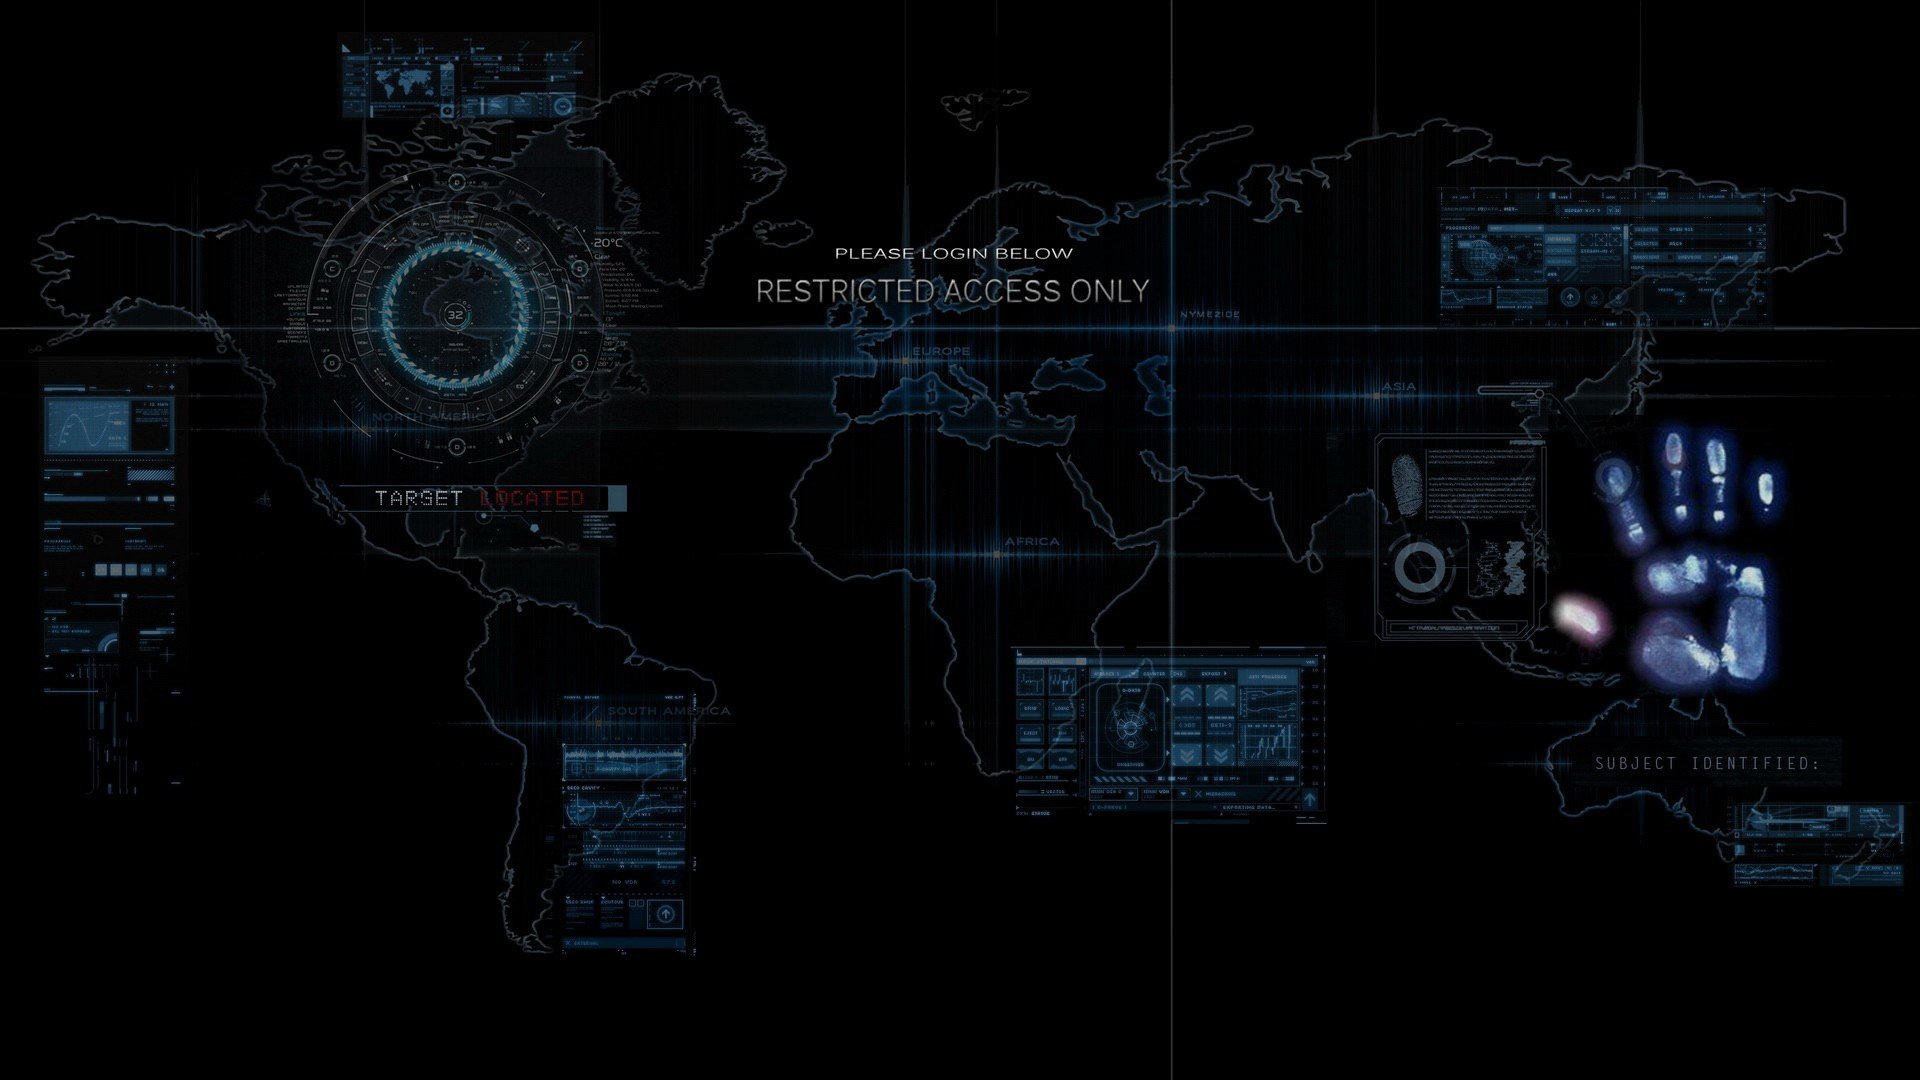 World Map Wallpaper 4k For Mobile